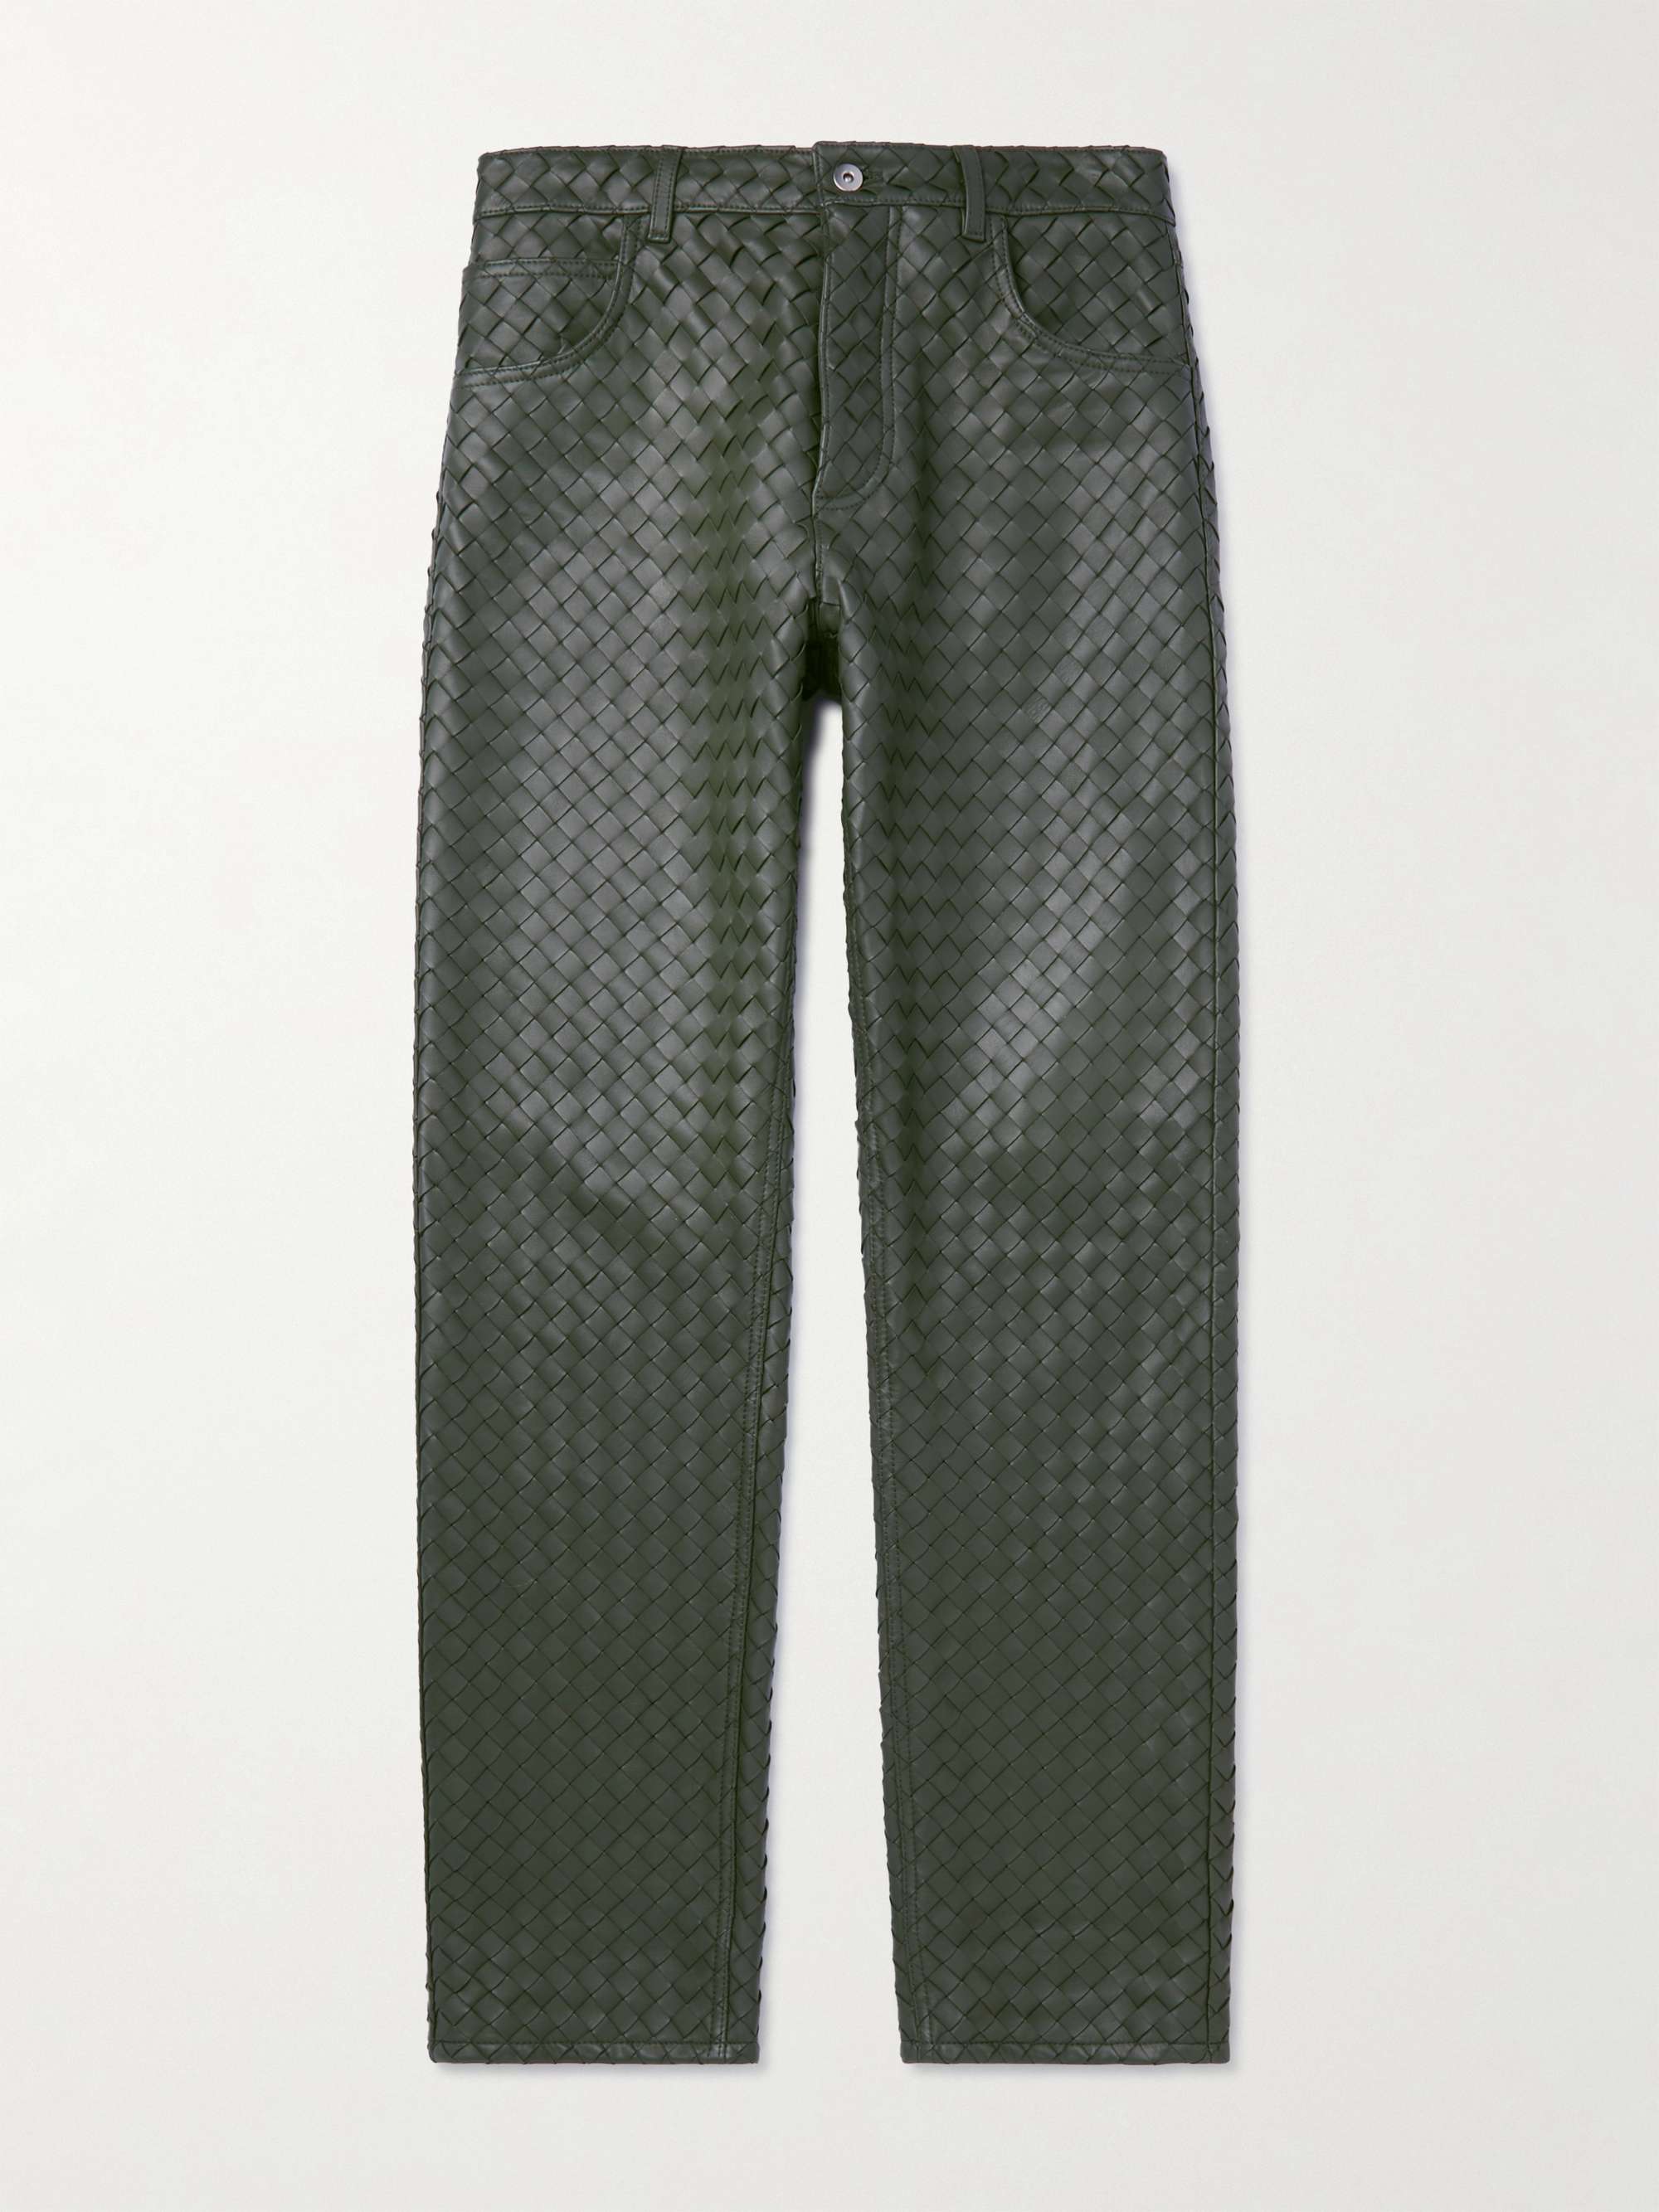 Bottega Veneta Intrecciato Leather Trousers - Men - Green Pants - M